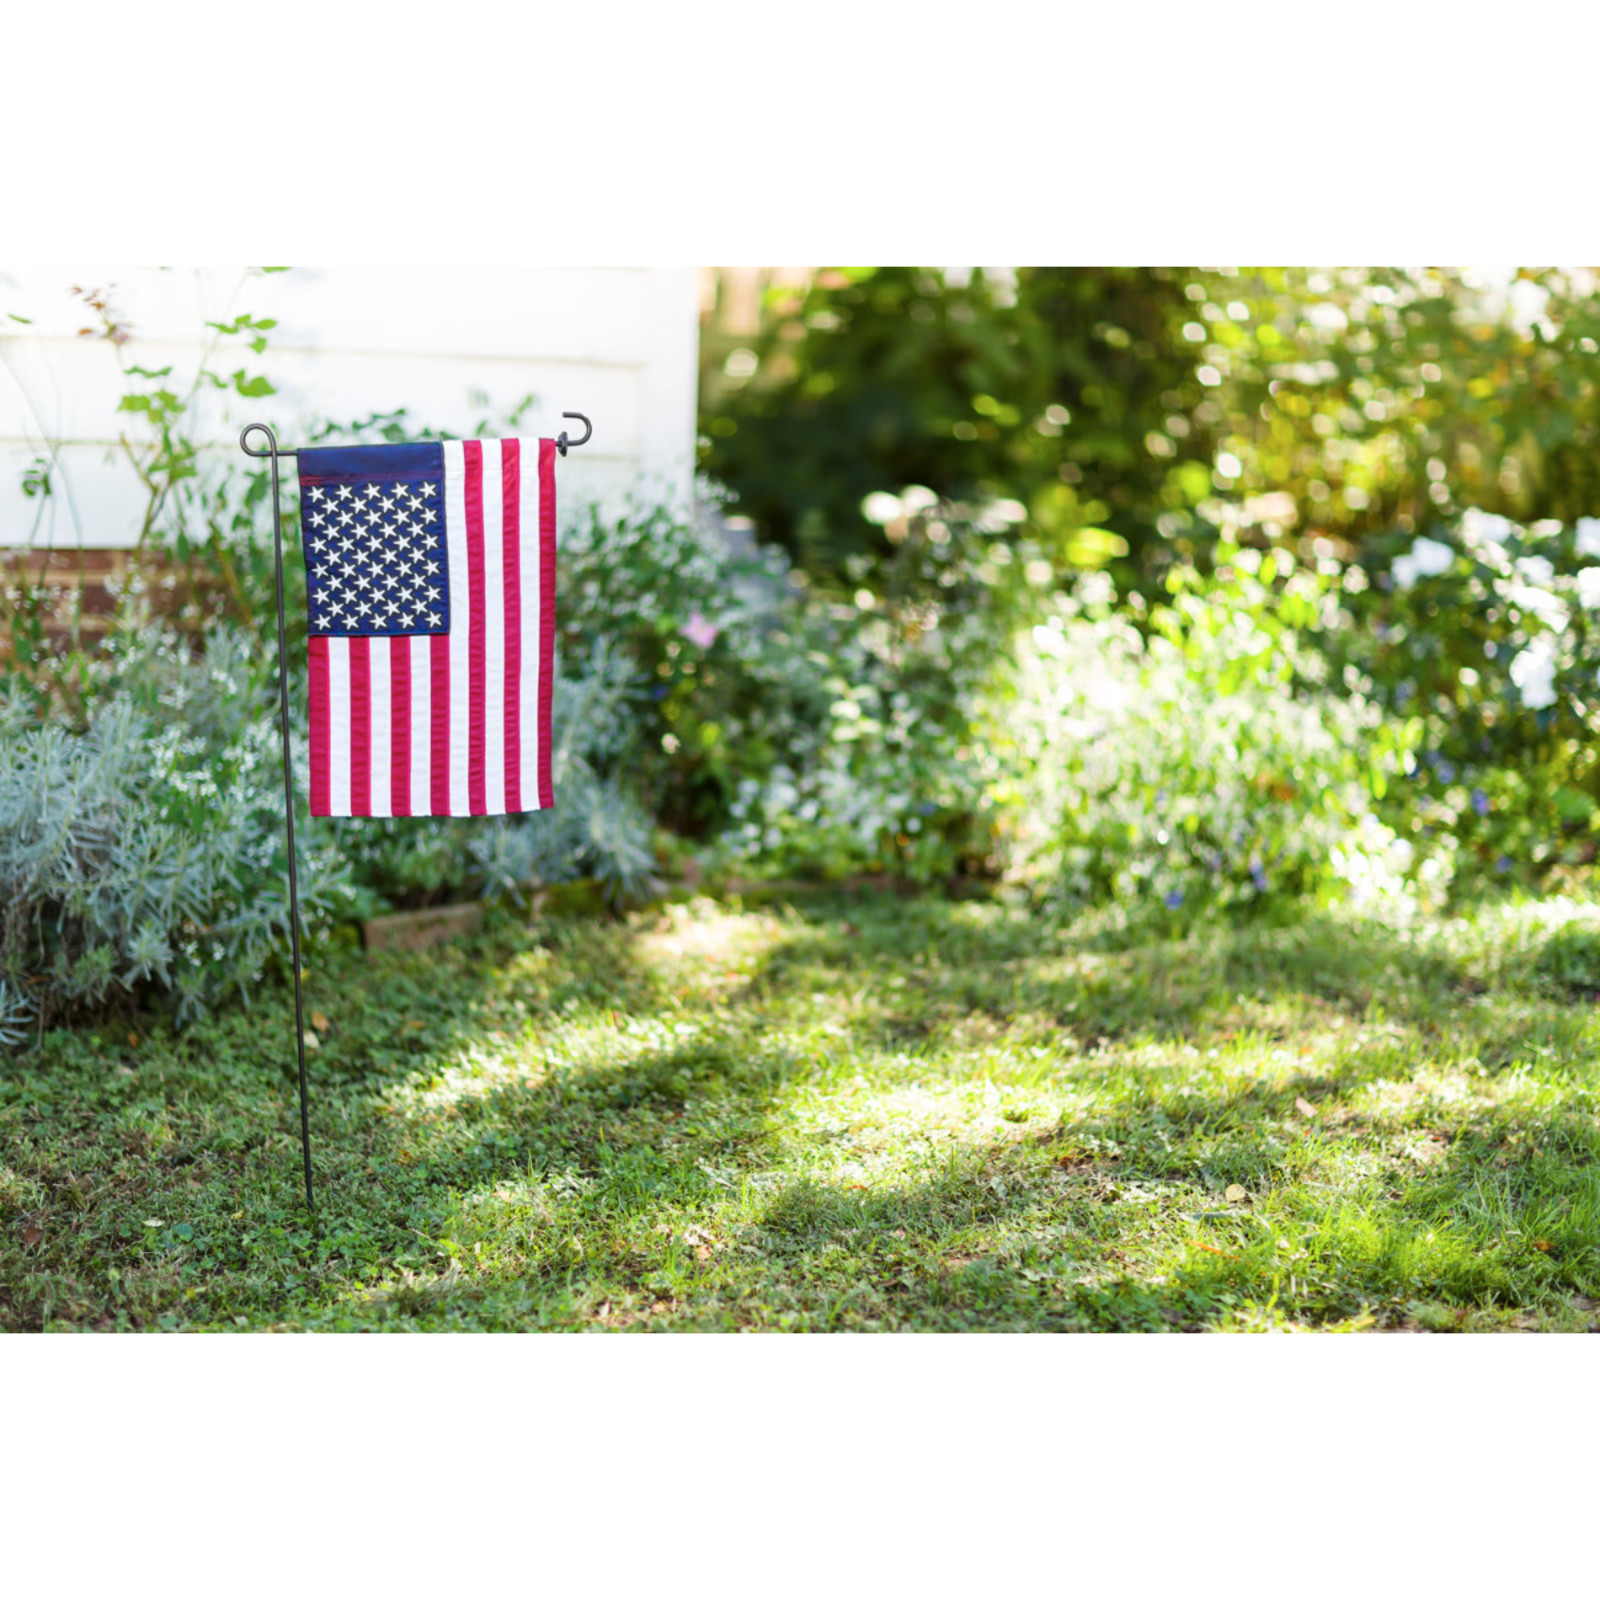 Evergreen Enterprises American Garden Flag    11220 loading=